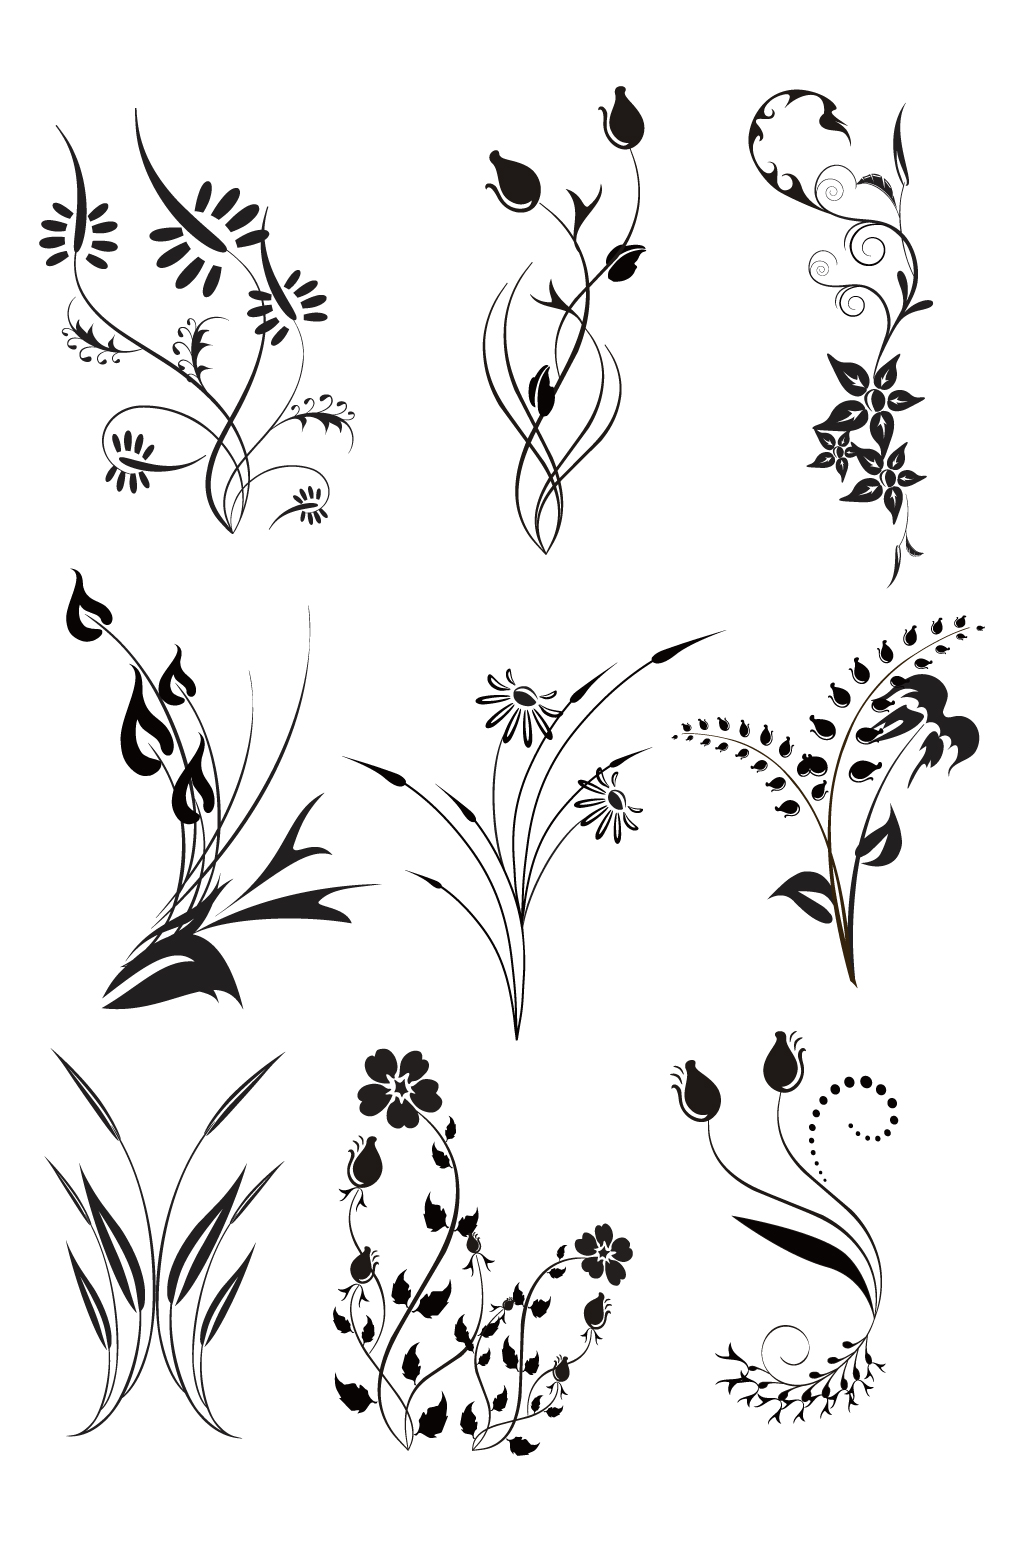 植物单独纹样花卉图片